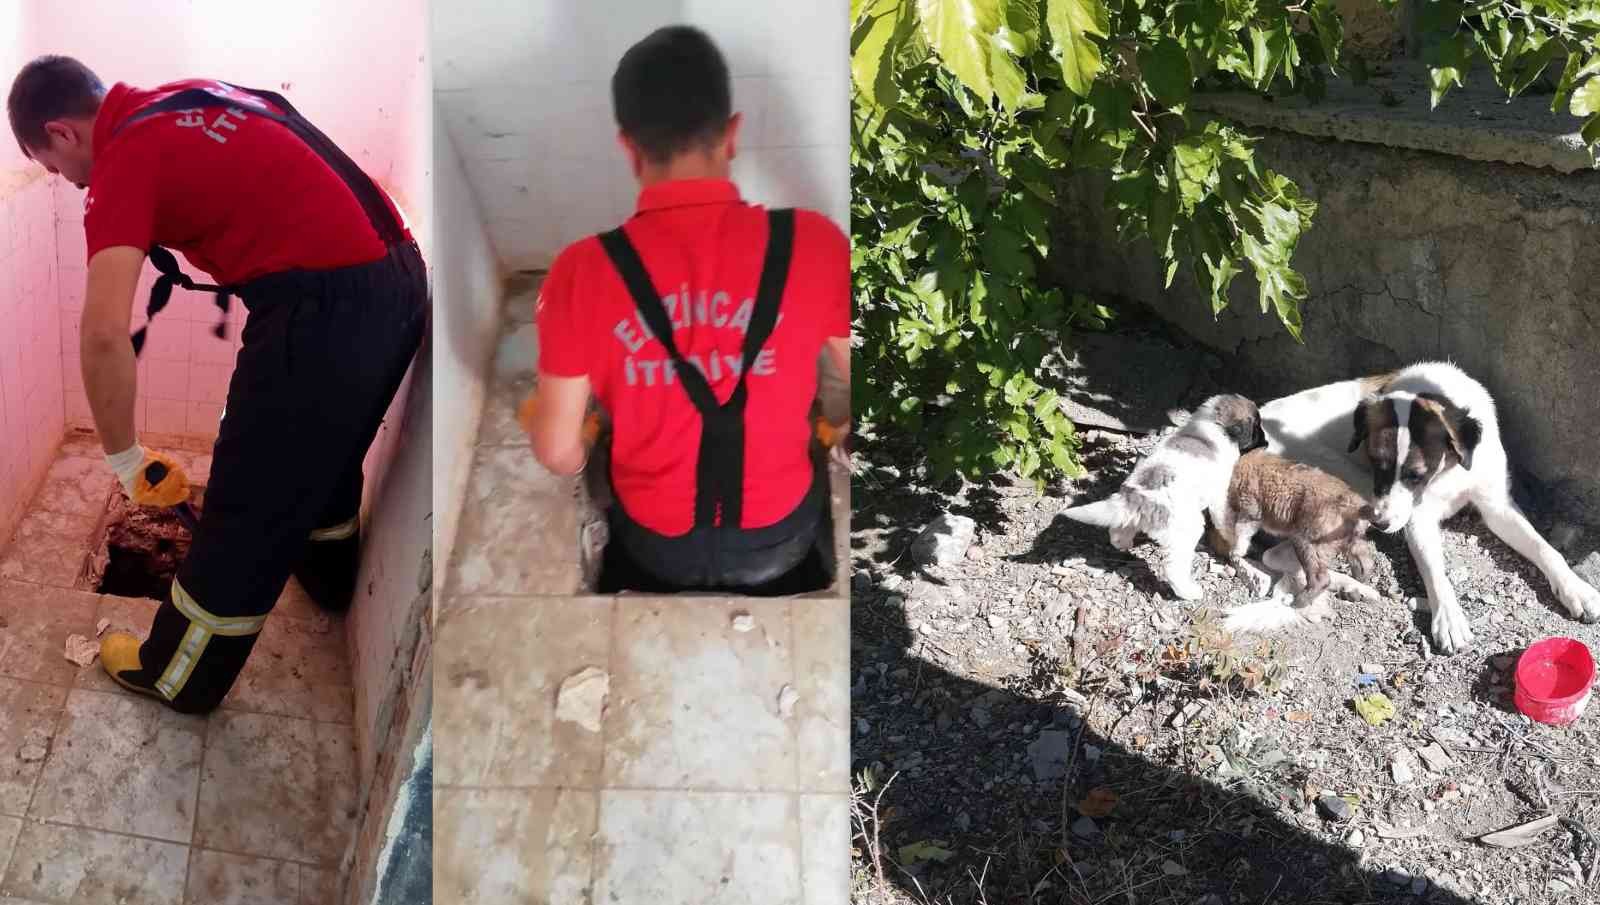 Düştükleri kuyuda mahsur kalan 2 köpek yavrusu, itfaiye ekiplerince kurtarıldı #erzincan